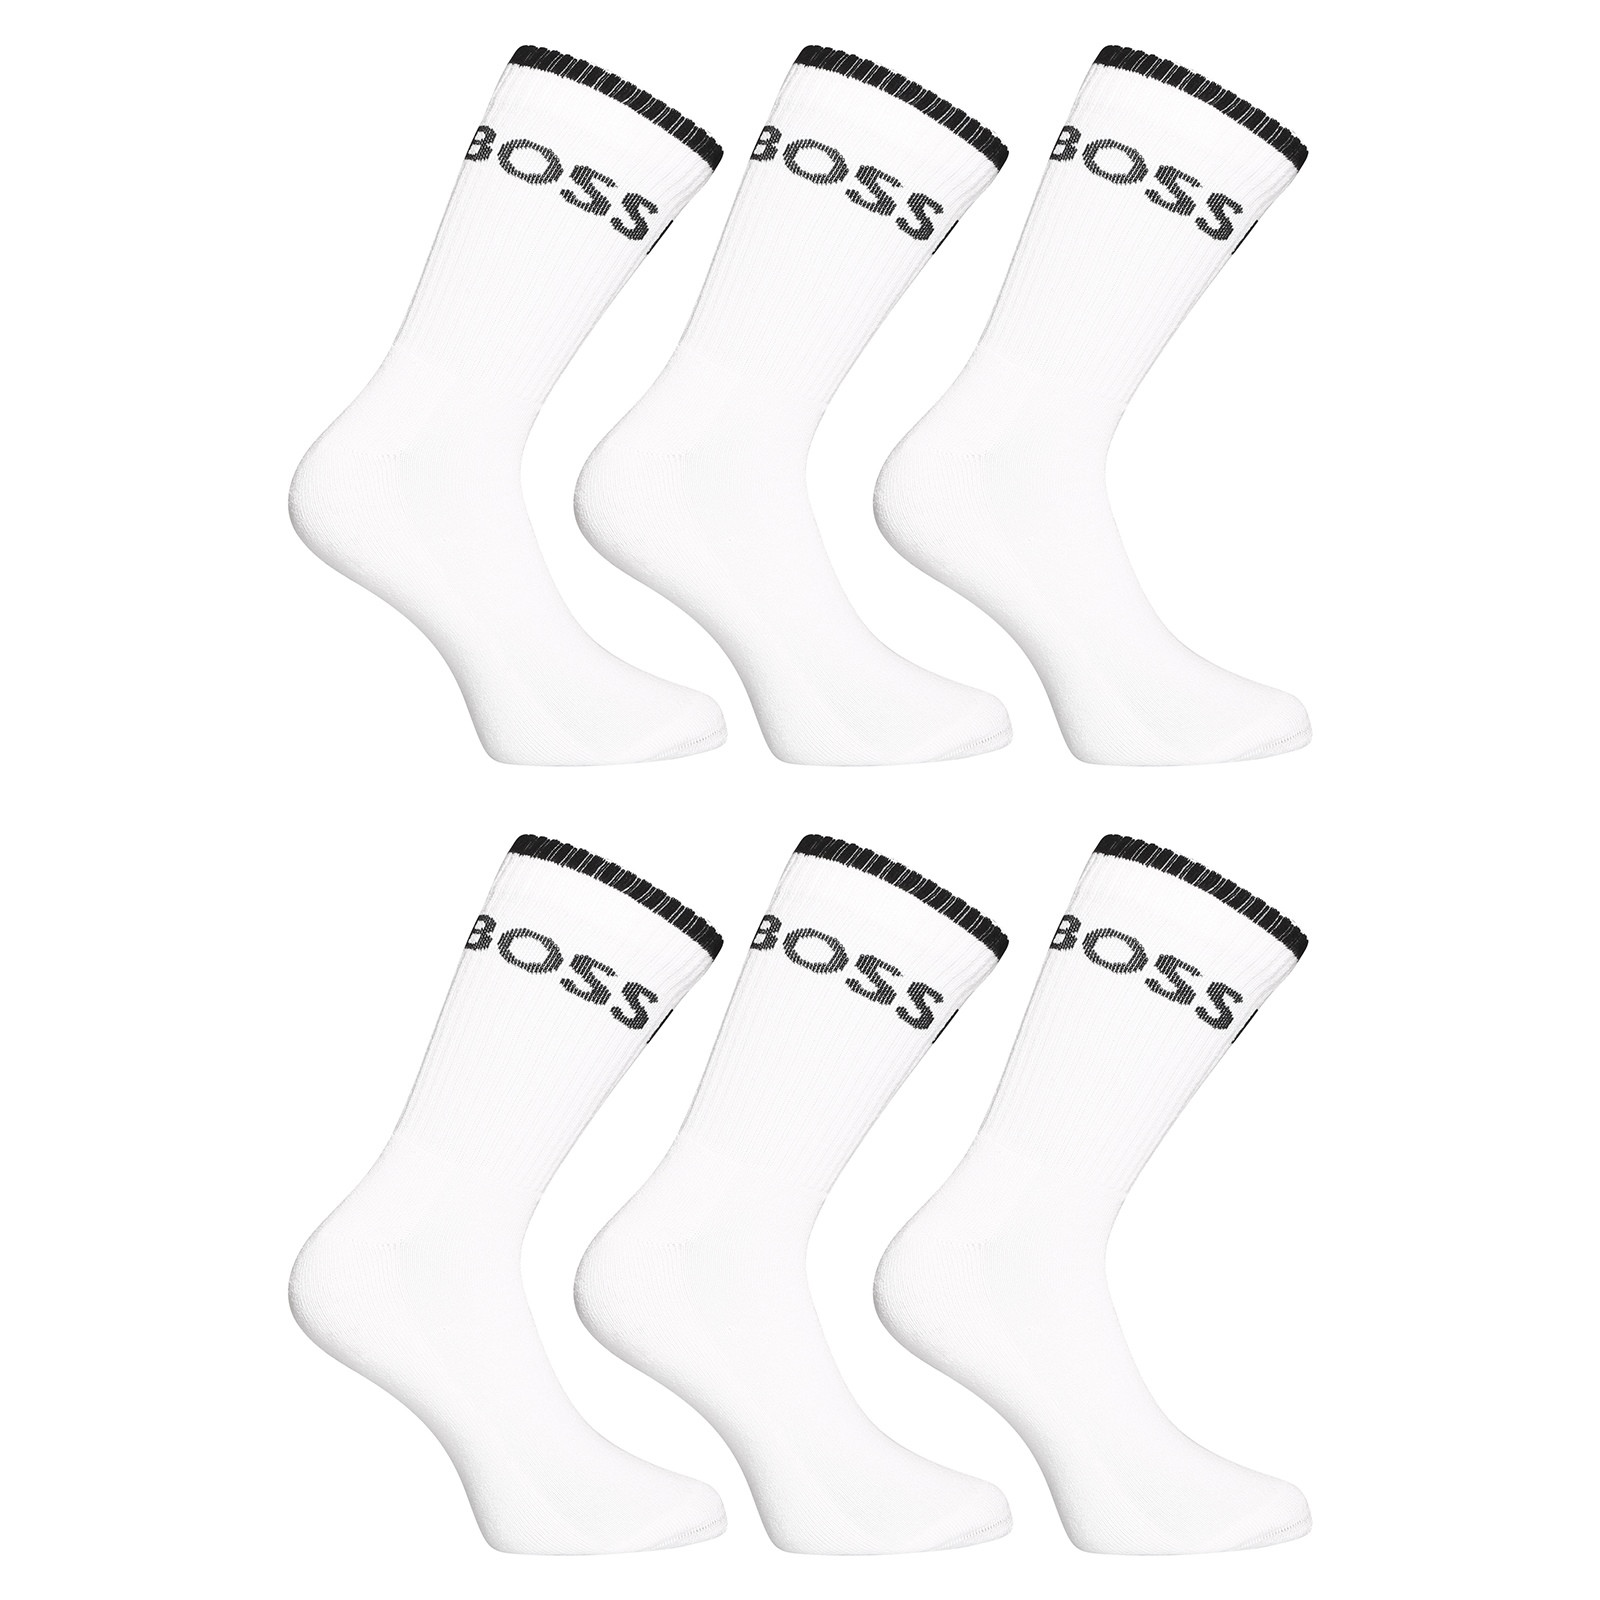 6PACK socks Hugo Boss high white